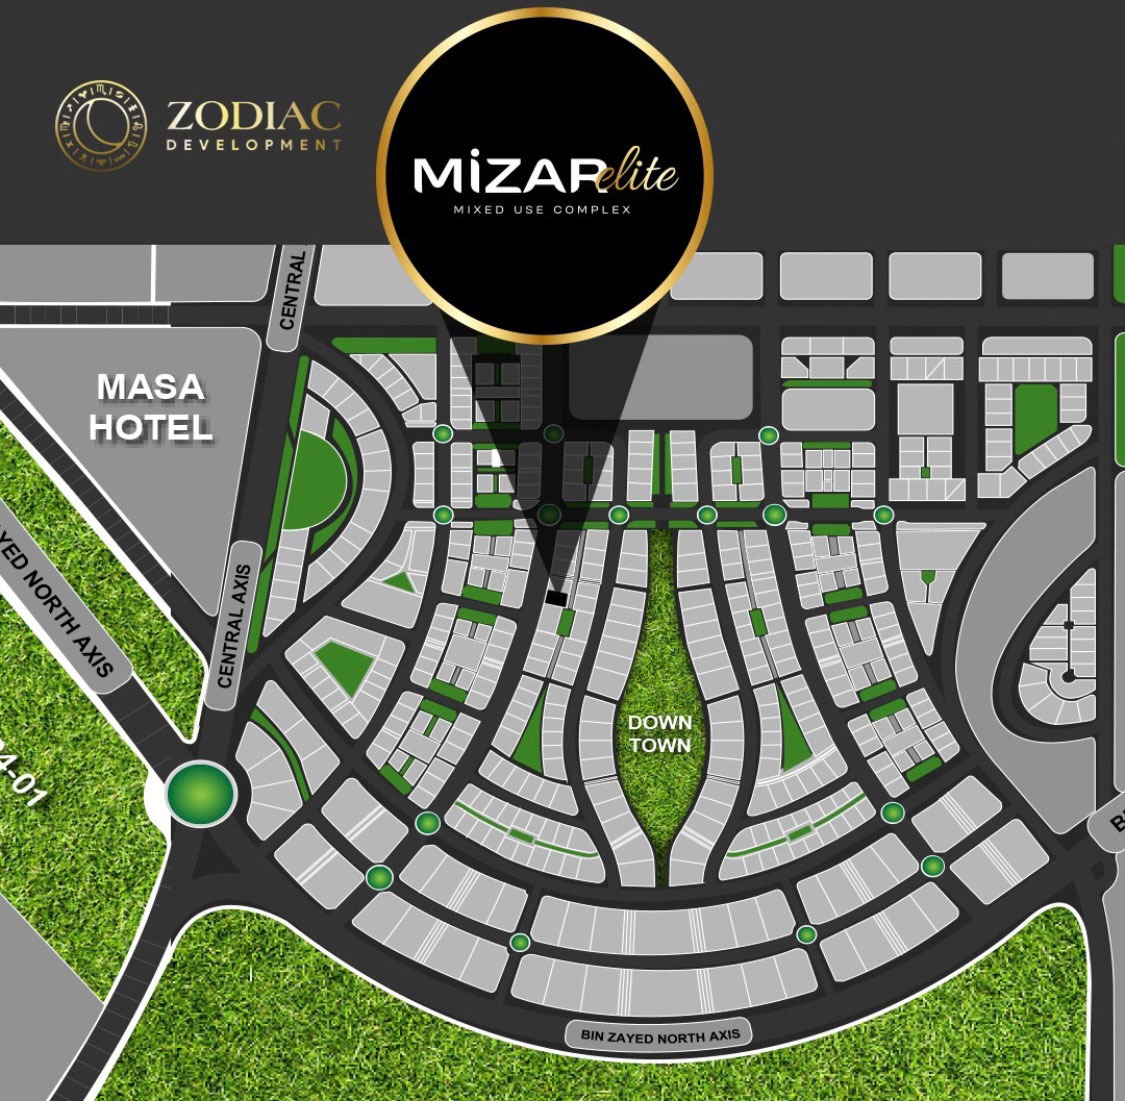 مول ميزار إيليت تاور العاصمة الإدارية الجديدة - Mall Mizar Elite Tower New Capitalتجاري - اداري - طبي